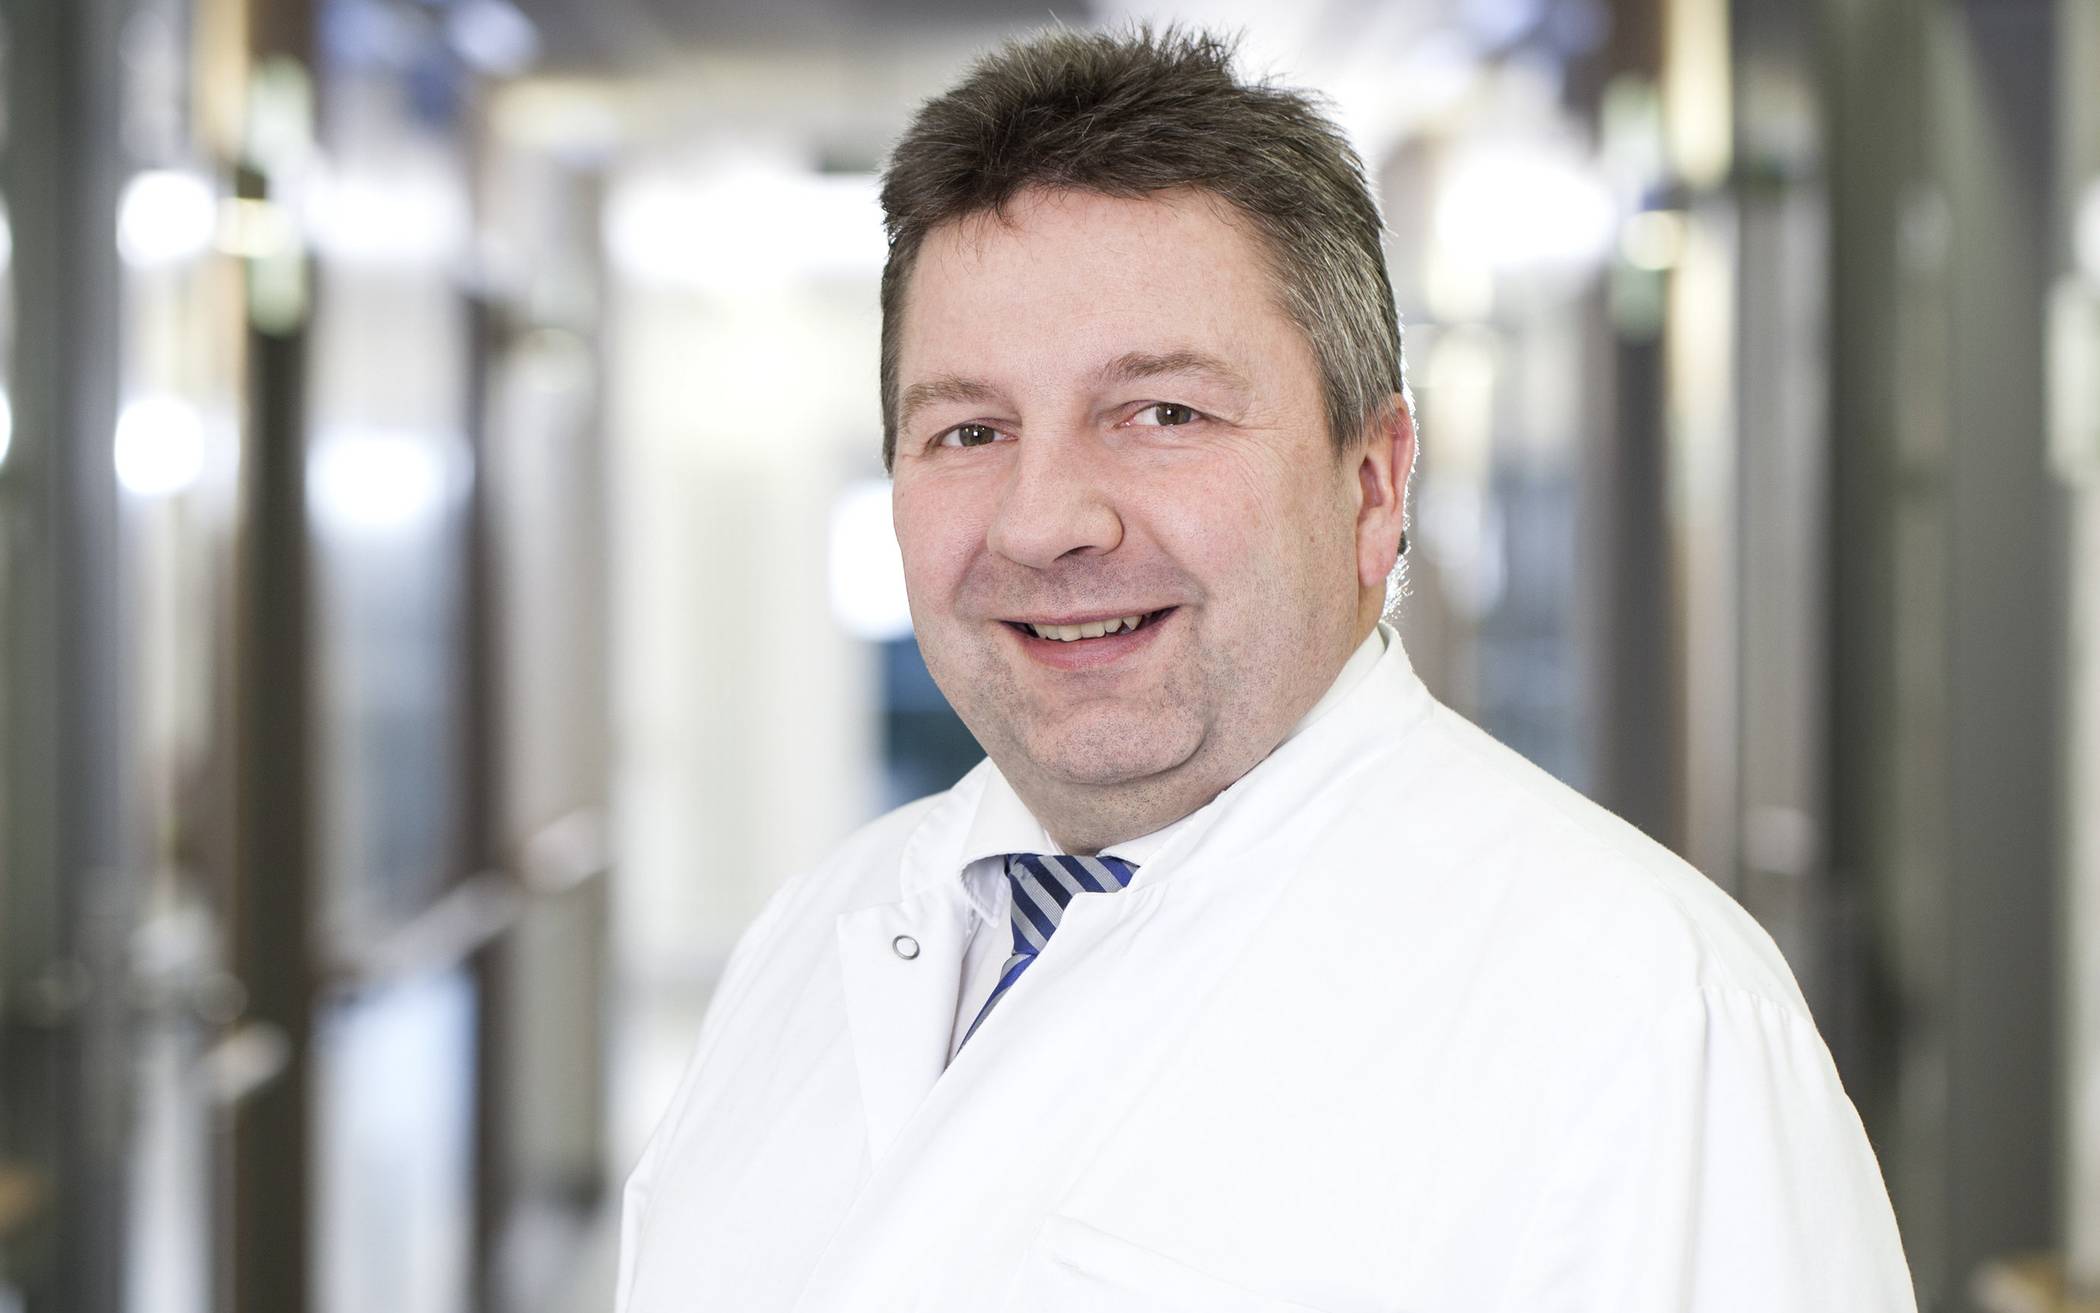  Dr. Thilo Traska, Chefarzt der Klinik für Allgemein-, Viszeral- und Gefäßchirurgie am Bethesda-Krankenhaus in Wuppertal. 